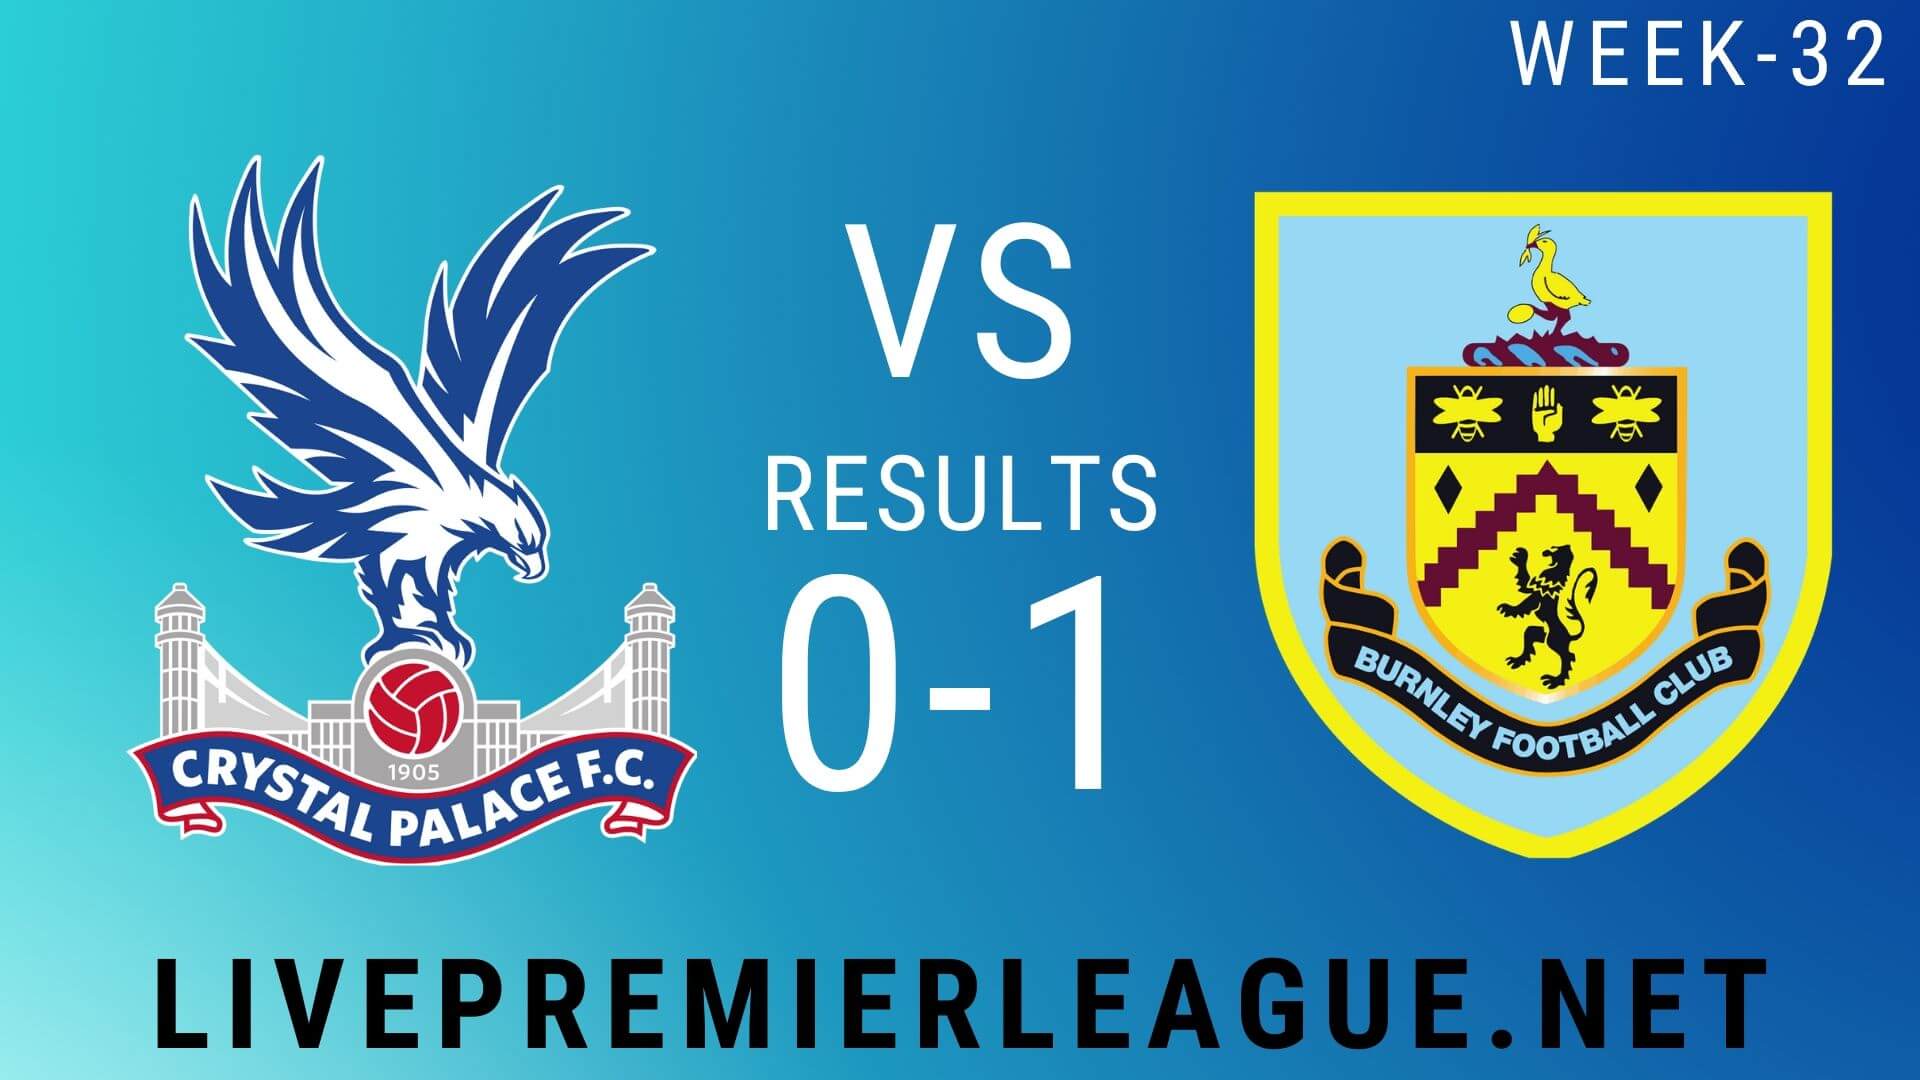 Crystal Palace Vs Burnley | Week 32 Result 2020